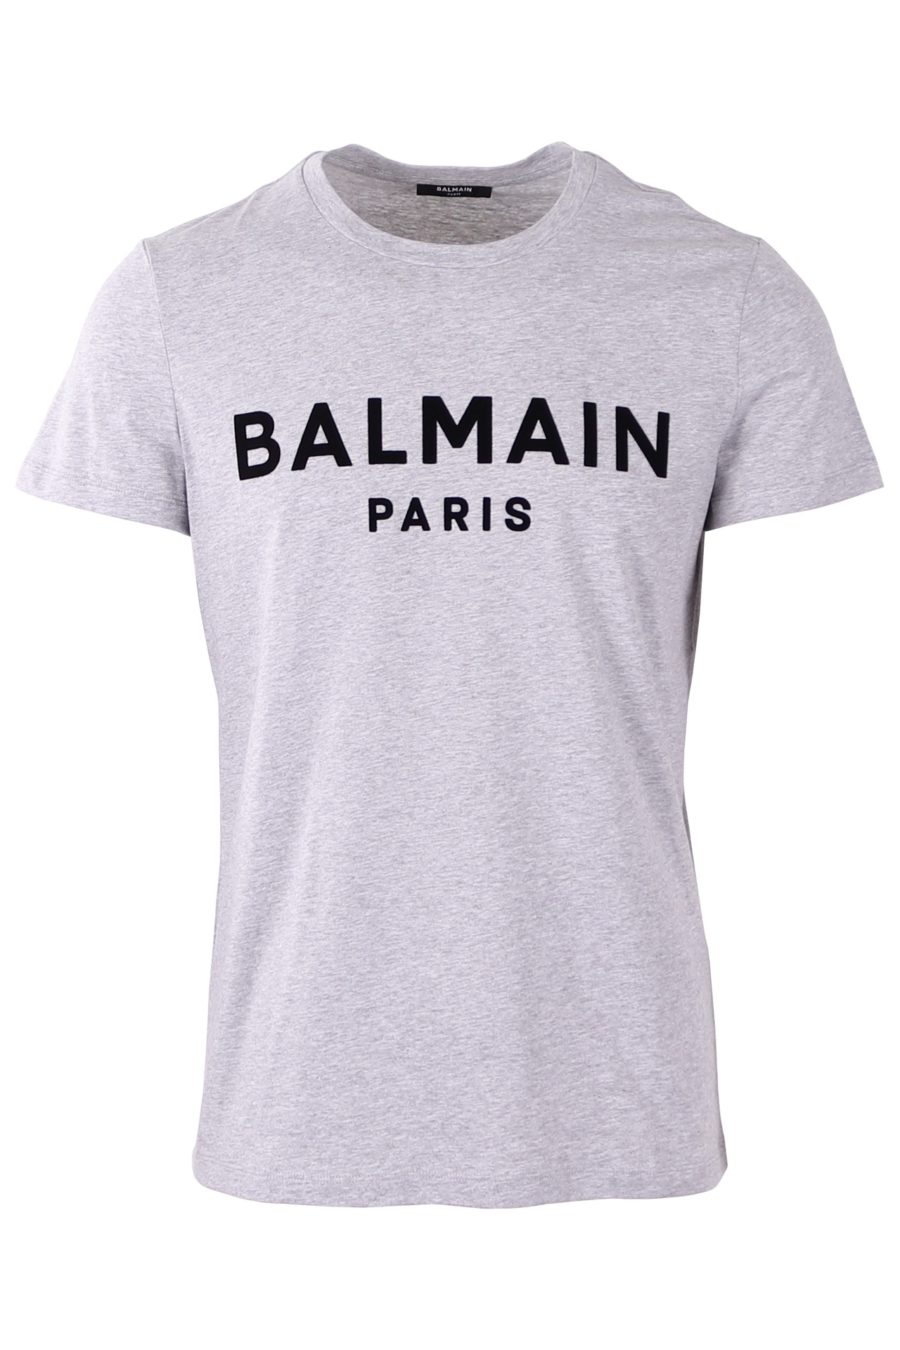 Camiseta Balmain gris con logo afelpado - 06eab78591b1e4829dc4eb194f83d199d3cb2e62